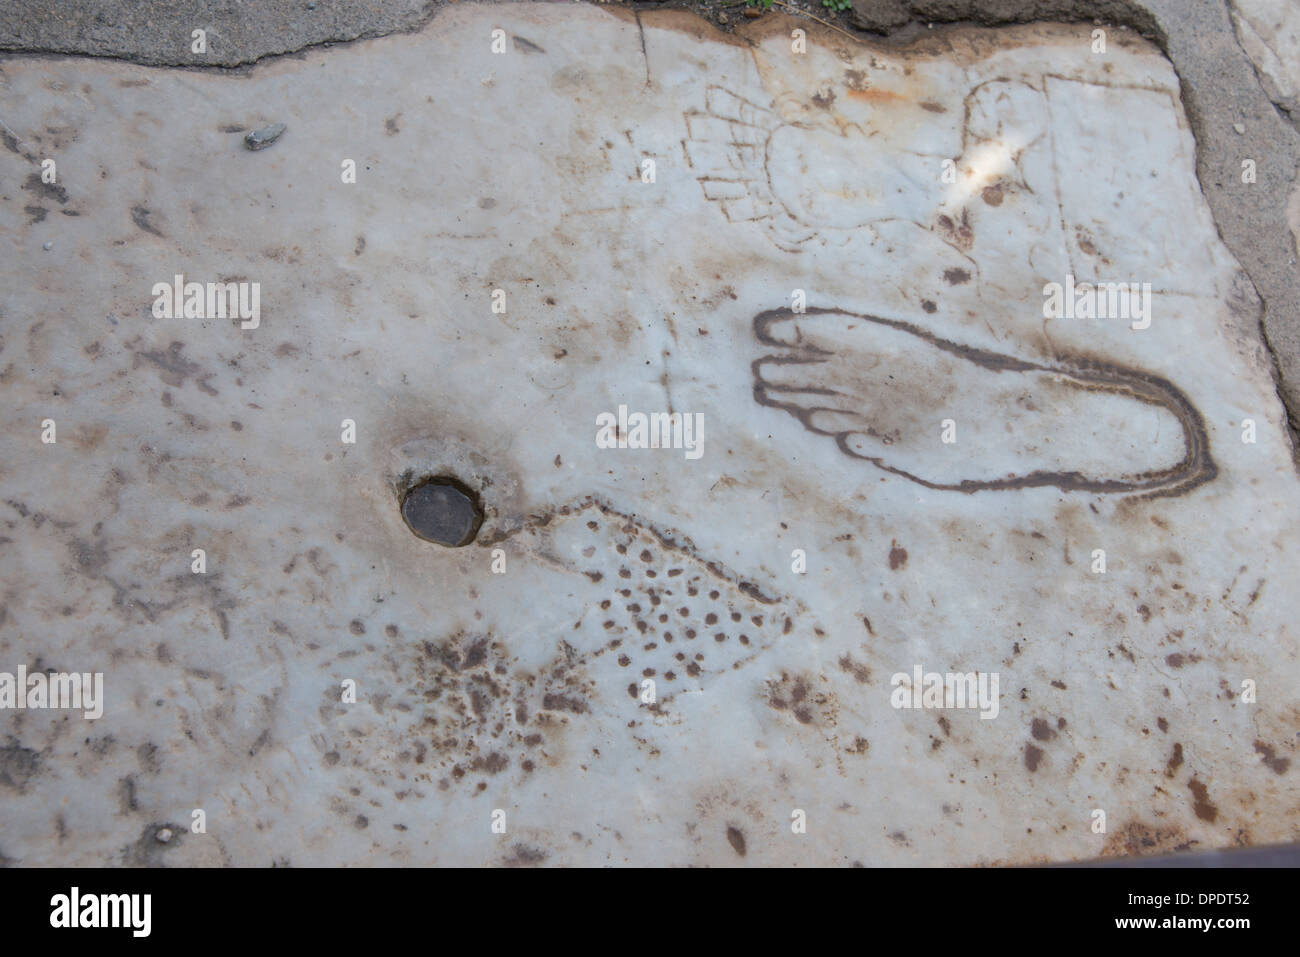 Turquía, Kusadasi, Efeso. Detalle de la supuesta burdel anuncio tallado en mármol. Foto de stock